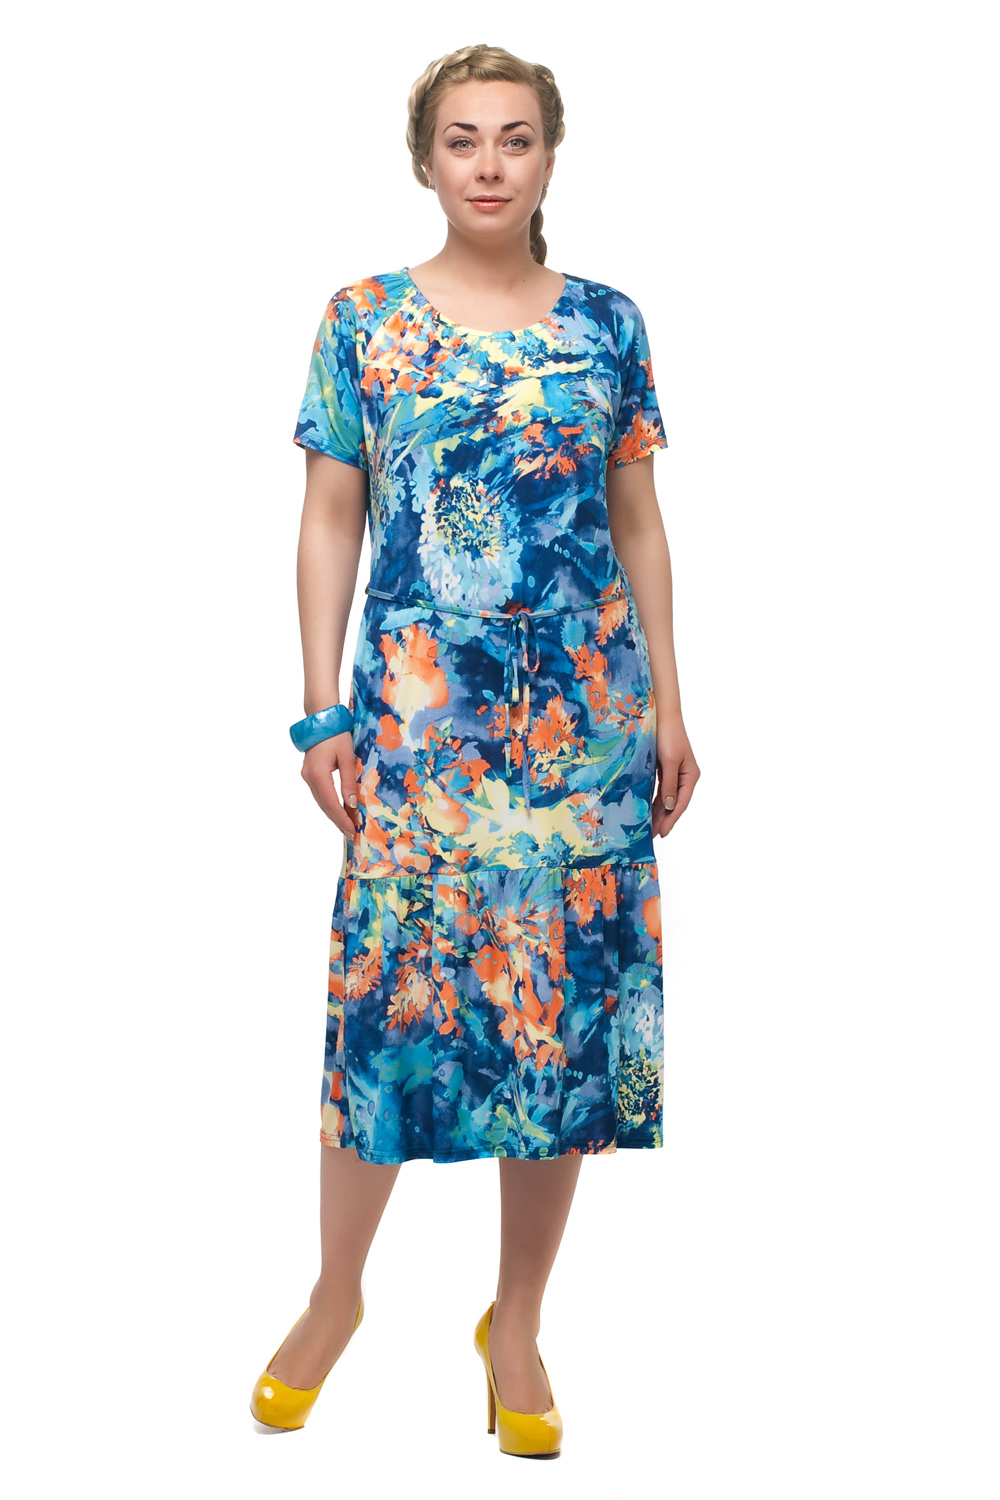 Женские летние платья больших размеров на озон. Платье Олси. Платье "лён Бианка" 415020. Женское платье Олси. Летние длинные платья Олси.